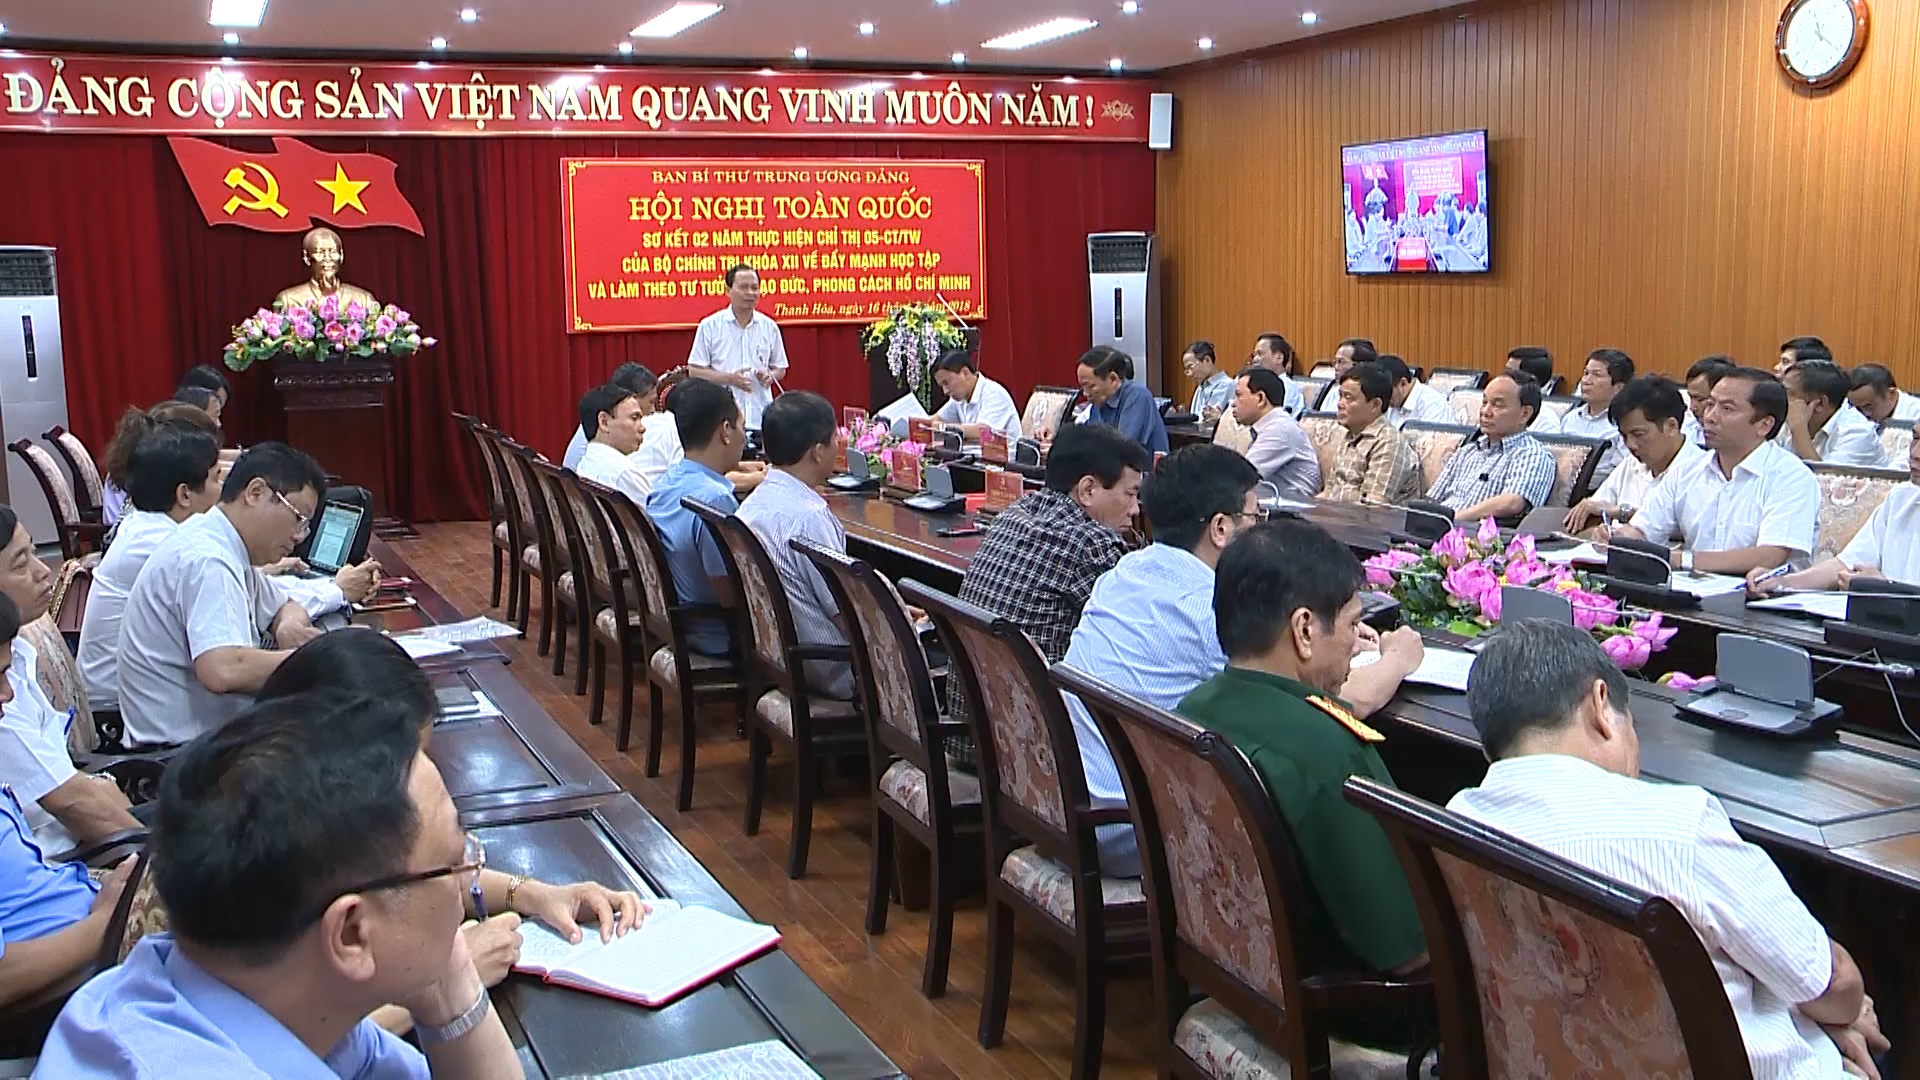 Đồng chí Bí thư Tỉnh uỷ, Chủ tịch HĐND tỉnh Trịnh Văn Chiến phát biểu chỉ đạo đội ngũ cán bộ chủ chốt